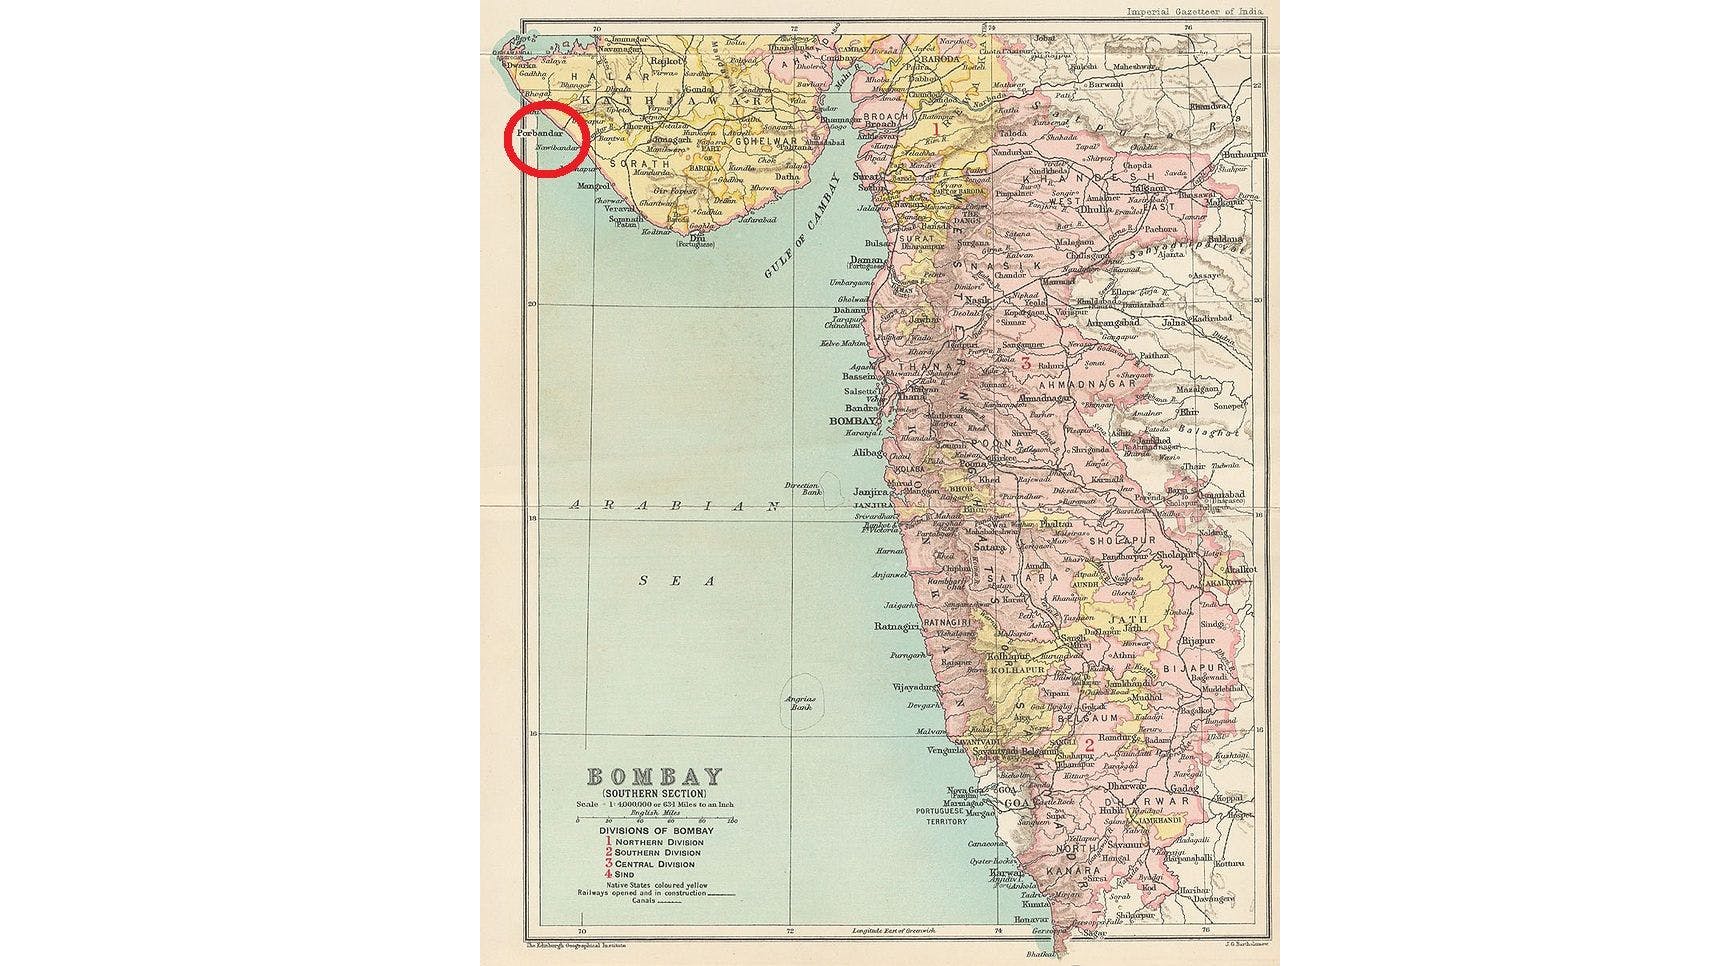 Porbandar in the map of British Presidency, 1909